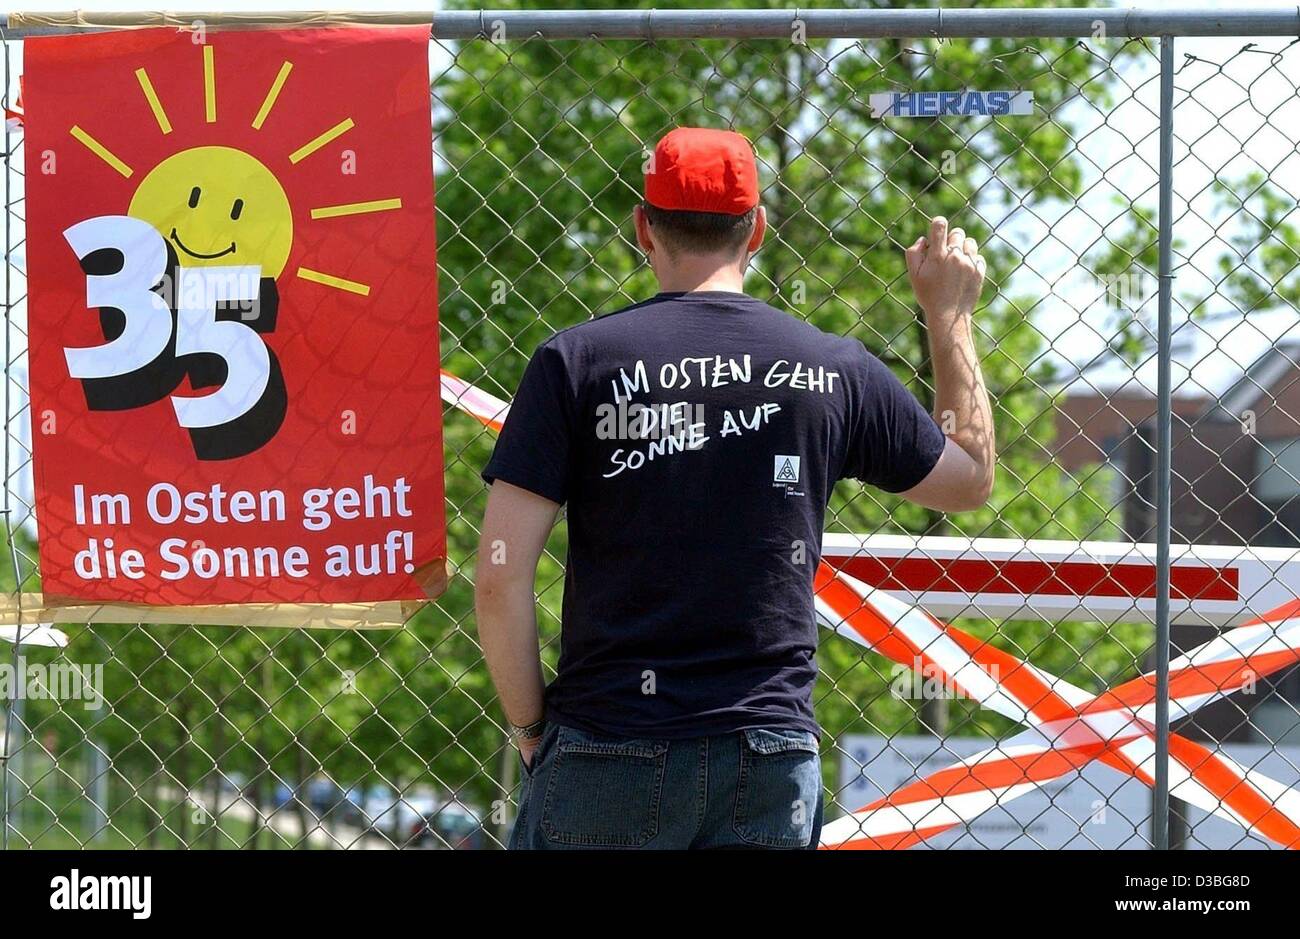 (Dpa) - Stürmer steht an einem Zaun neben ein Plakat im Osten Geht Die Sonne Auf liest "(die Sonne geht im Osten) in den Räumlichkeiten des VW-Werk in Mosel, Deutschland, 4. Juni 2003. Die Nummer 35 auf dem Plakat symbolisiert den Grund für den Arbeitskampf, die über die Introducti ist Stockfoto